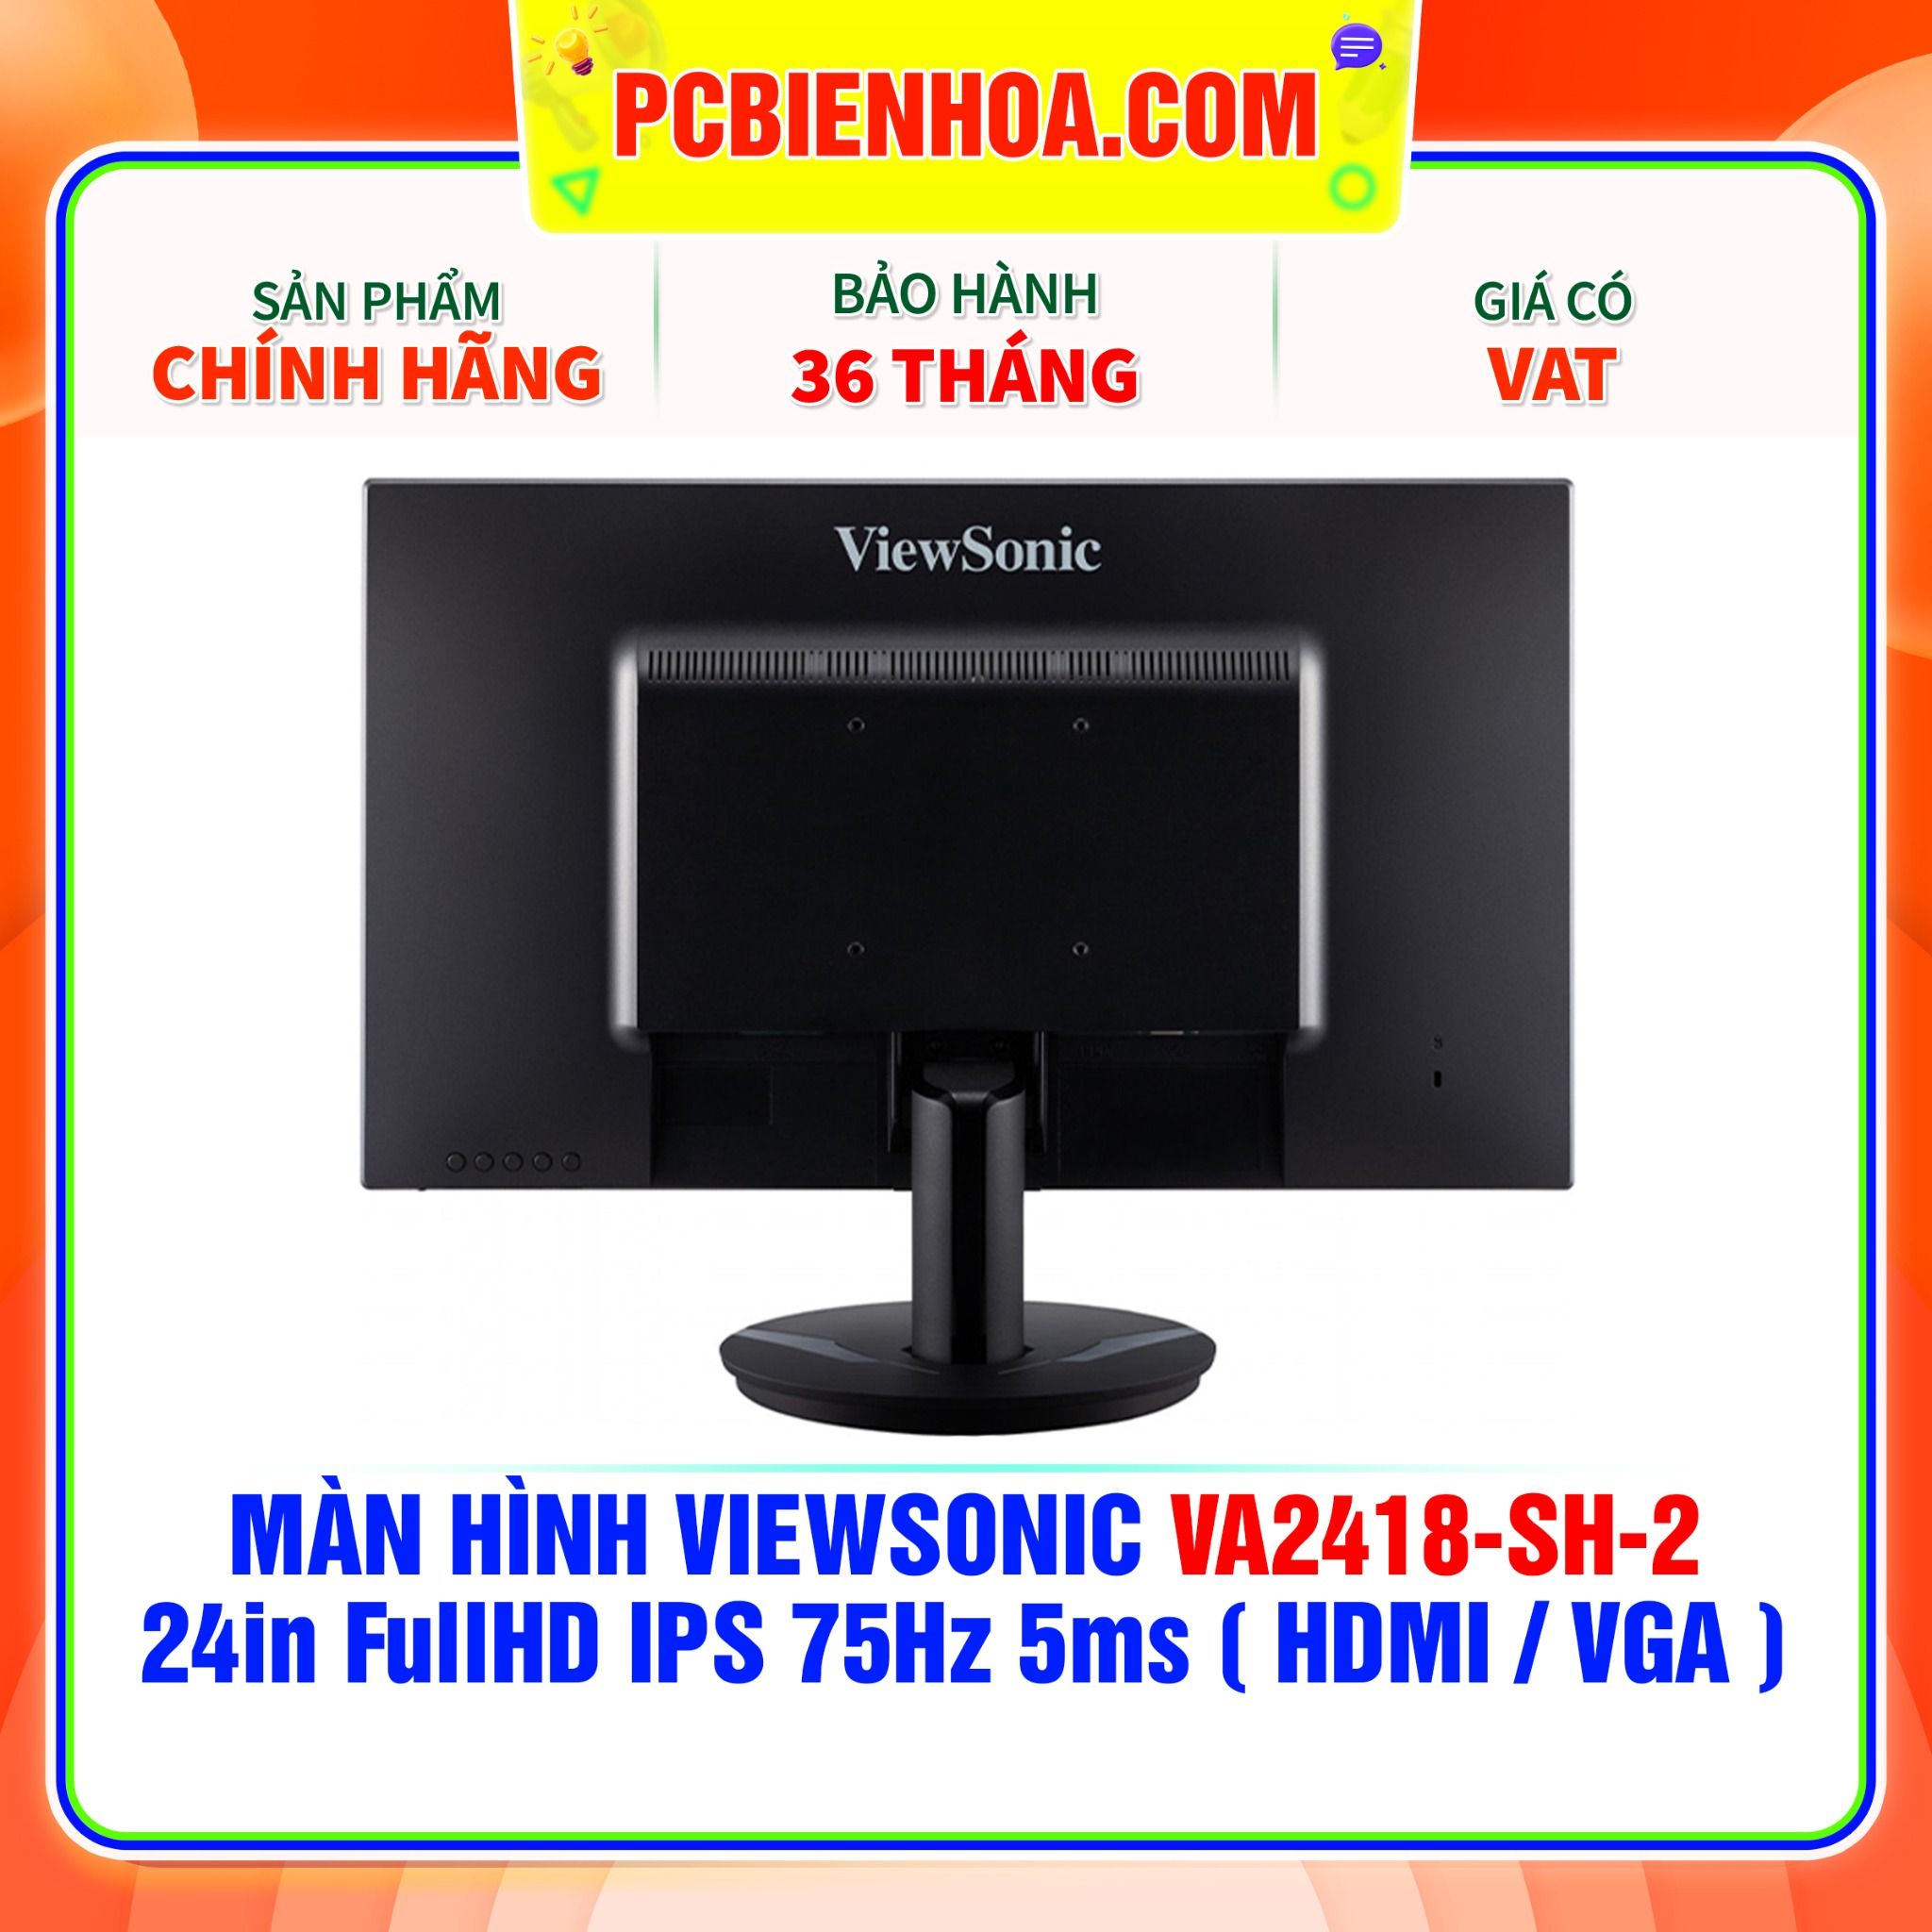  MÀN HÌNH VIEWSONIC VA2418-SH-2 24in FullHD IPS 75Hz 5ms ( HDMI / VGA ) 